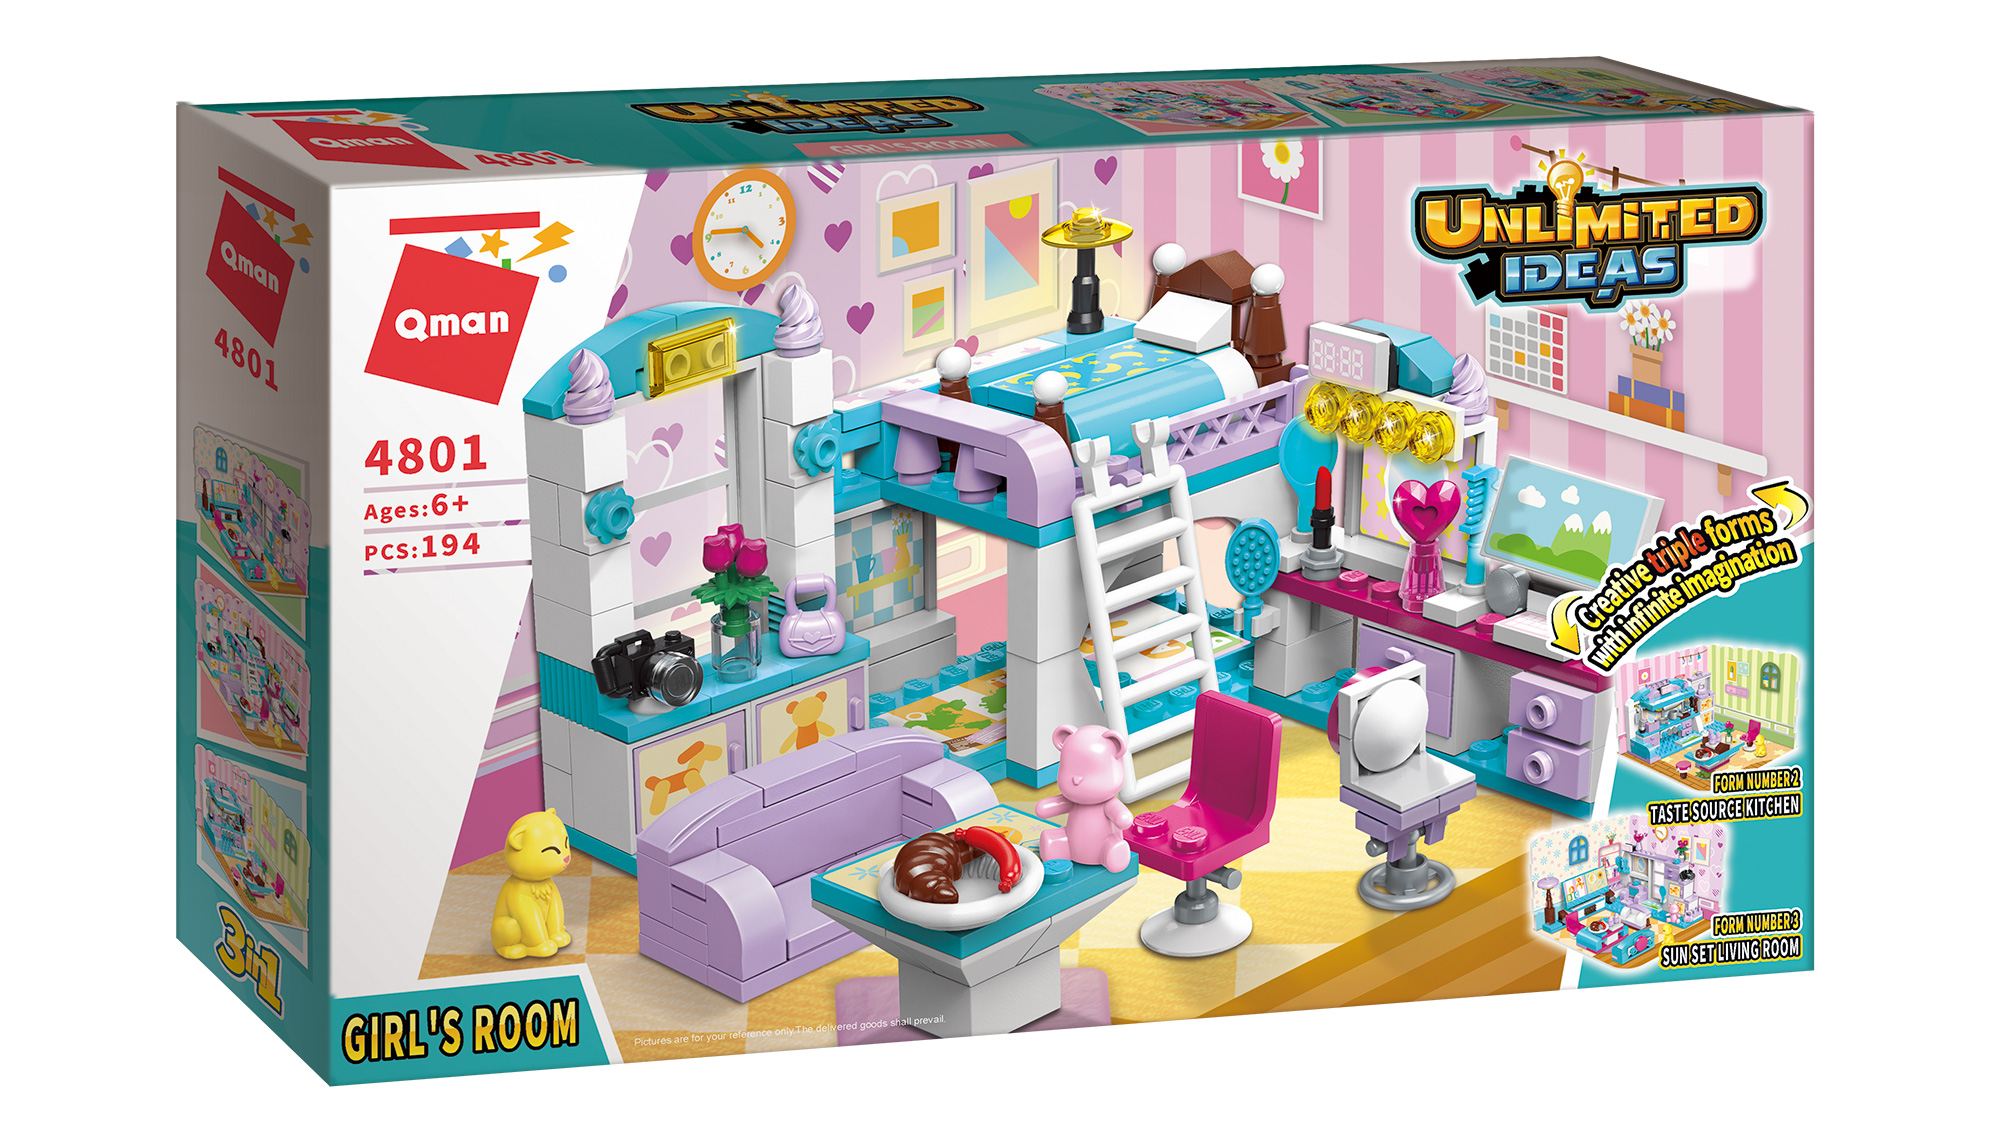 Lego-Qman-Unlimited Ideas-Girls Room